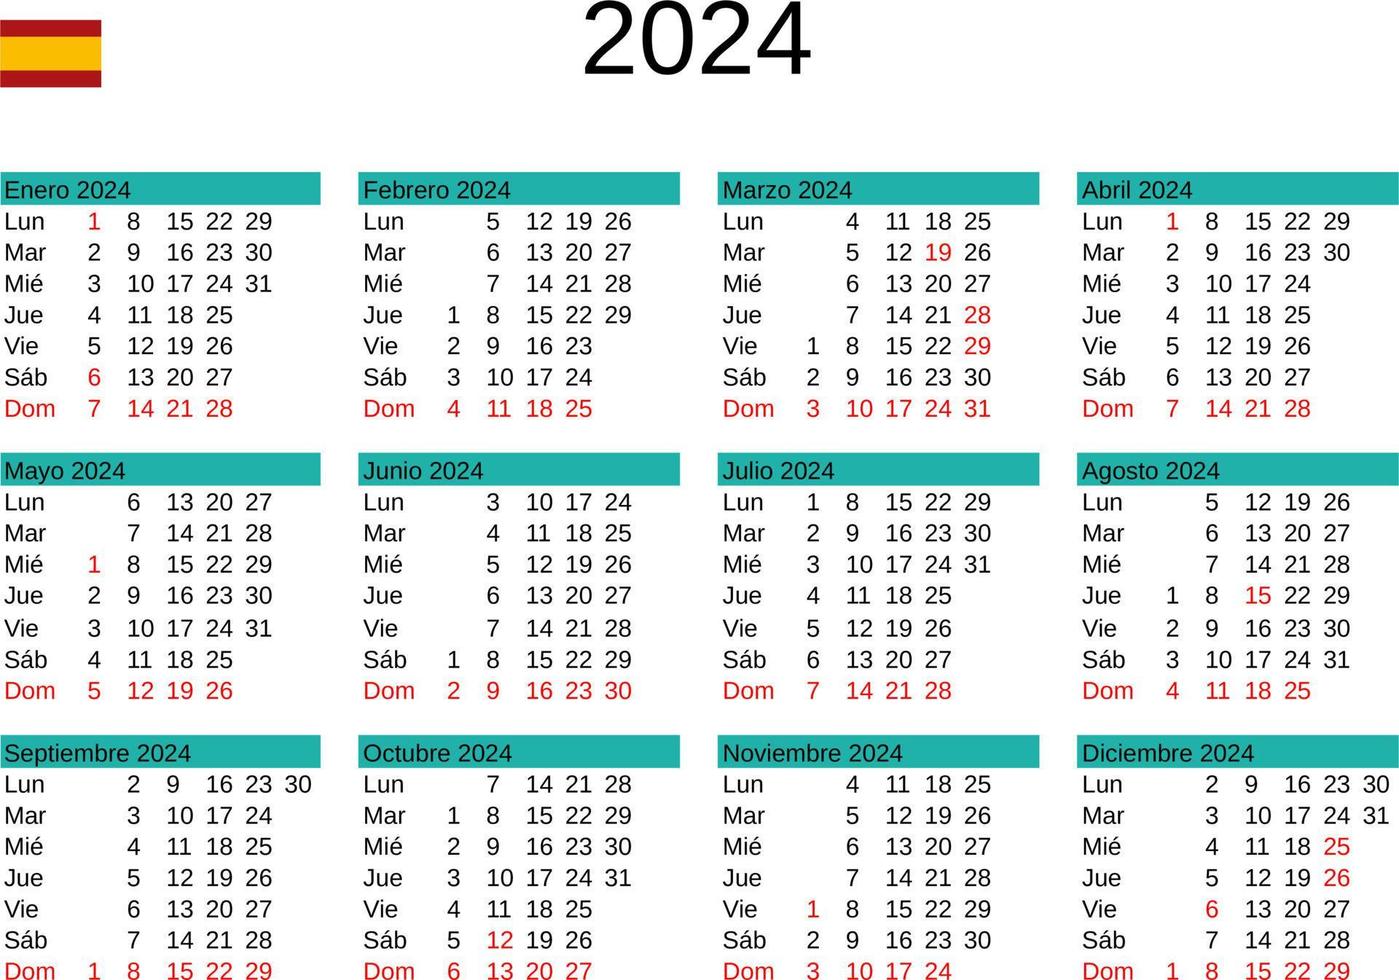 año 2024 calendario en Español con España Días festivos 22873510